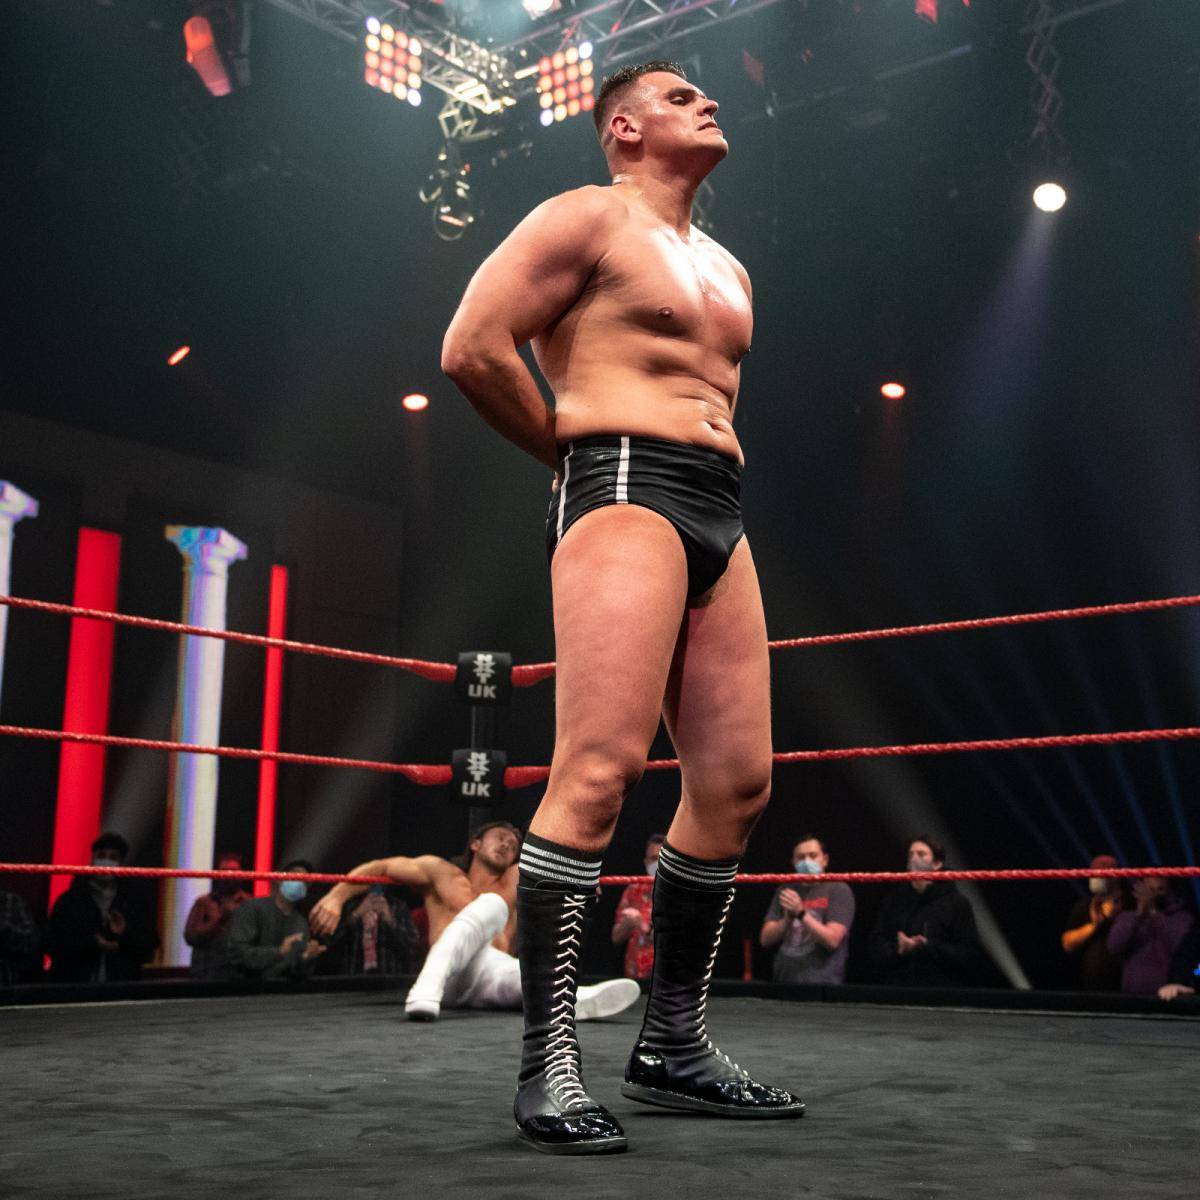 Das österreichische Phänomen WALTER bestreitet sein letztes Match im WWE-Europakader und wechselt in die USA - bald zu RAW oder SmackDown?